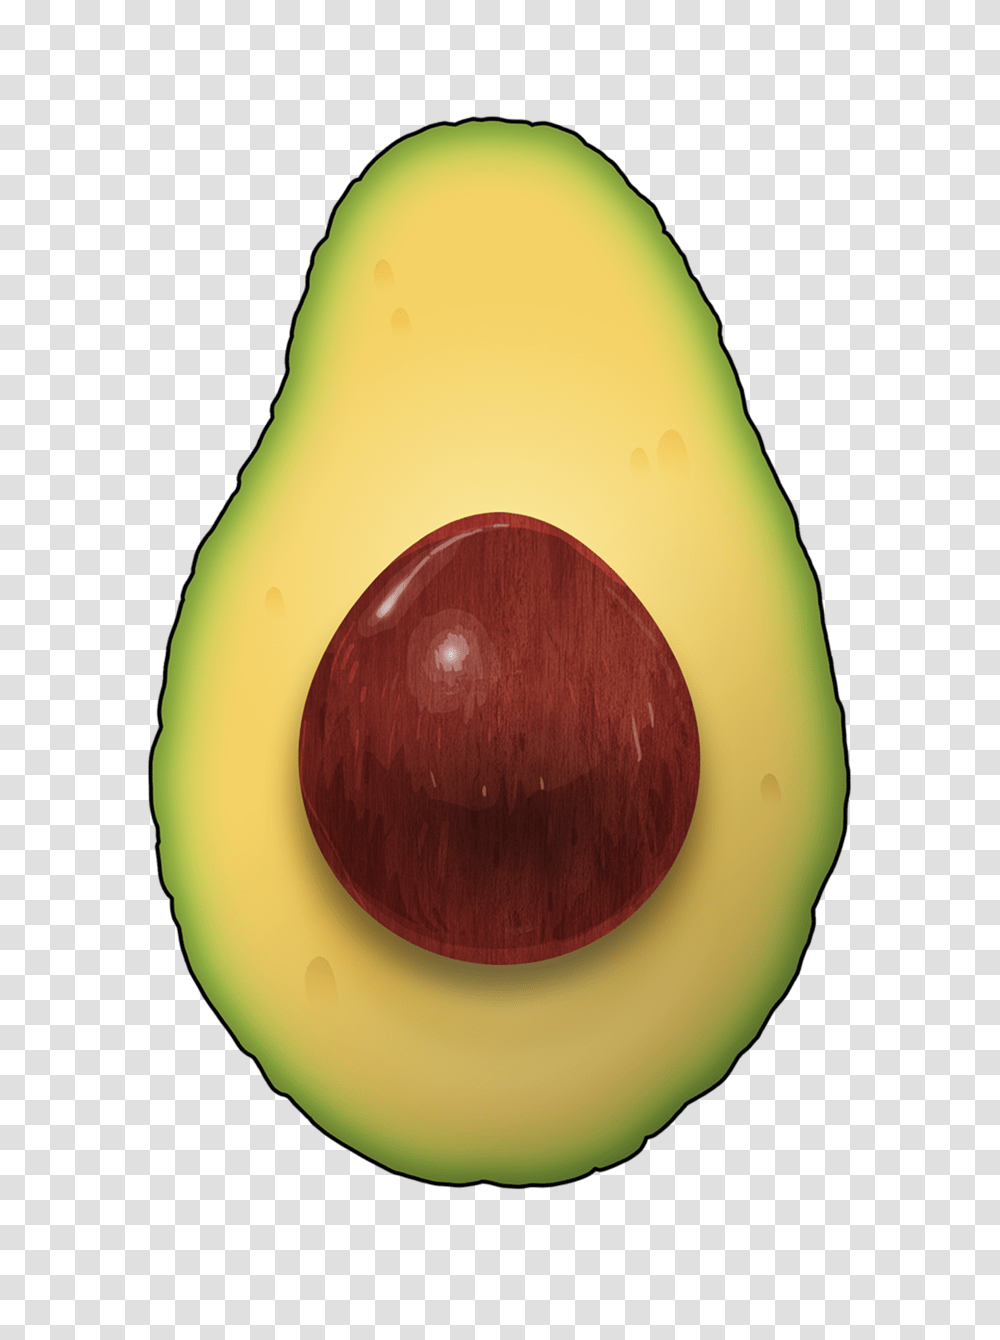 Avocado Images Free Download, Plant, Fruit, Food, Egg Transparent Png